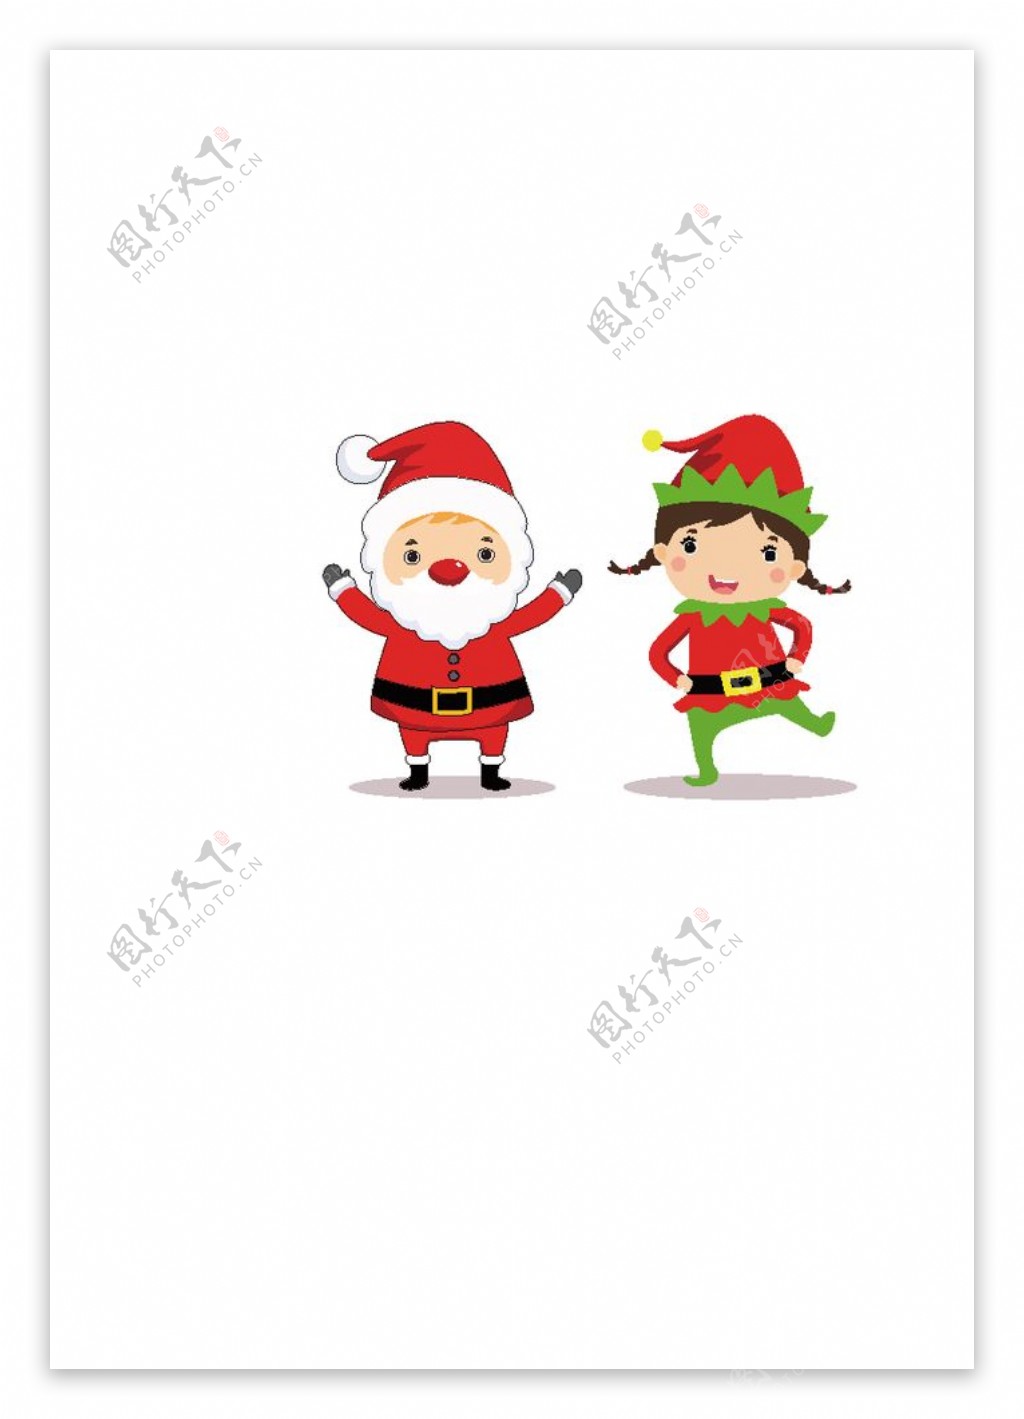 圣诞娃娃滚雪球图片素材-编号16836988-图行天下